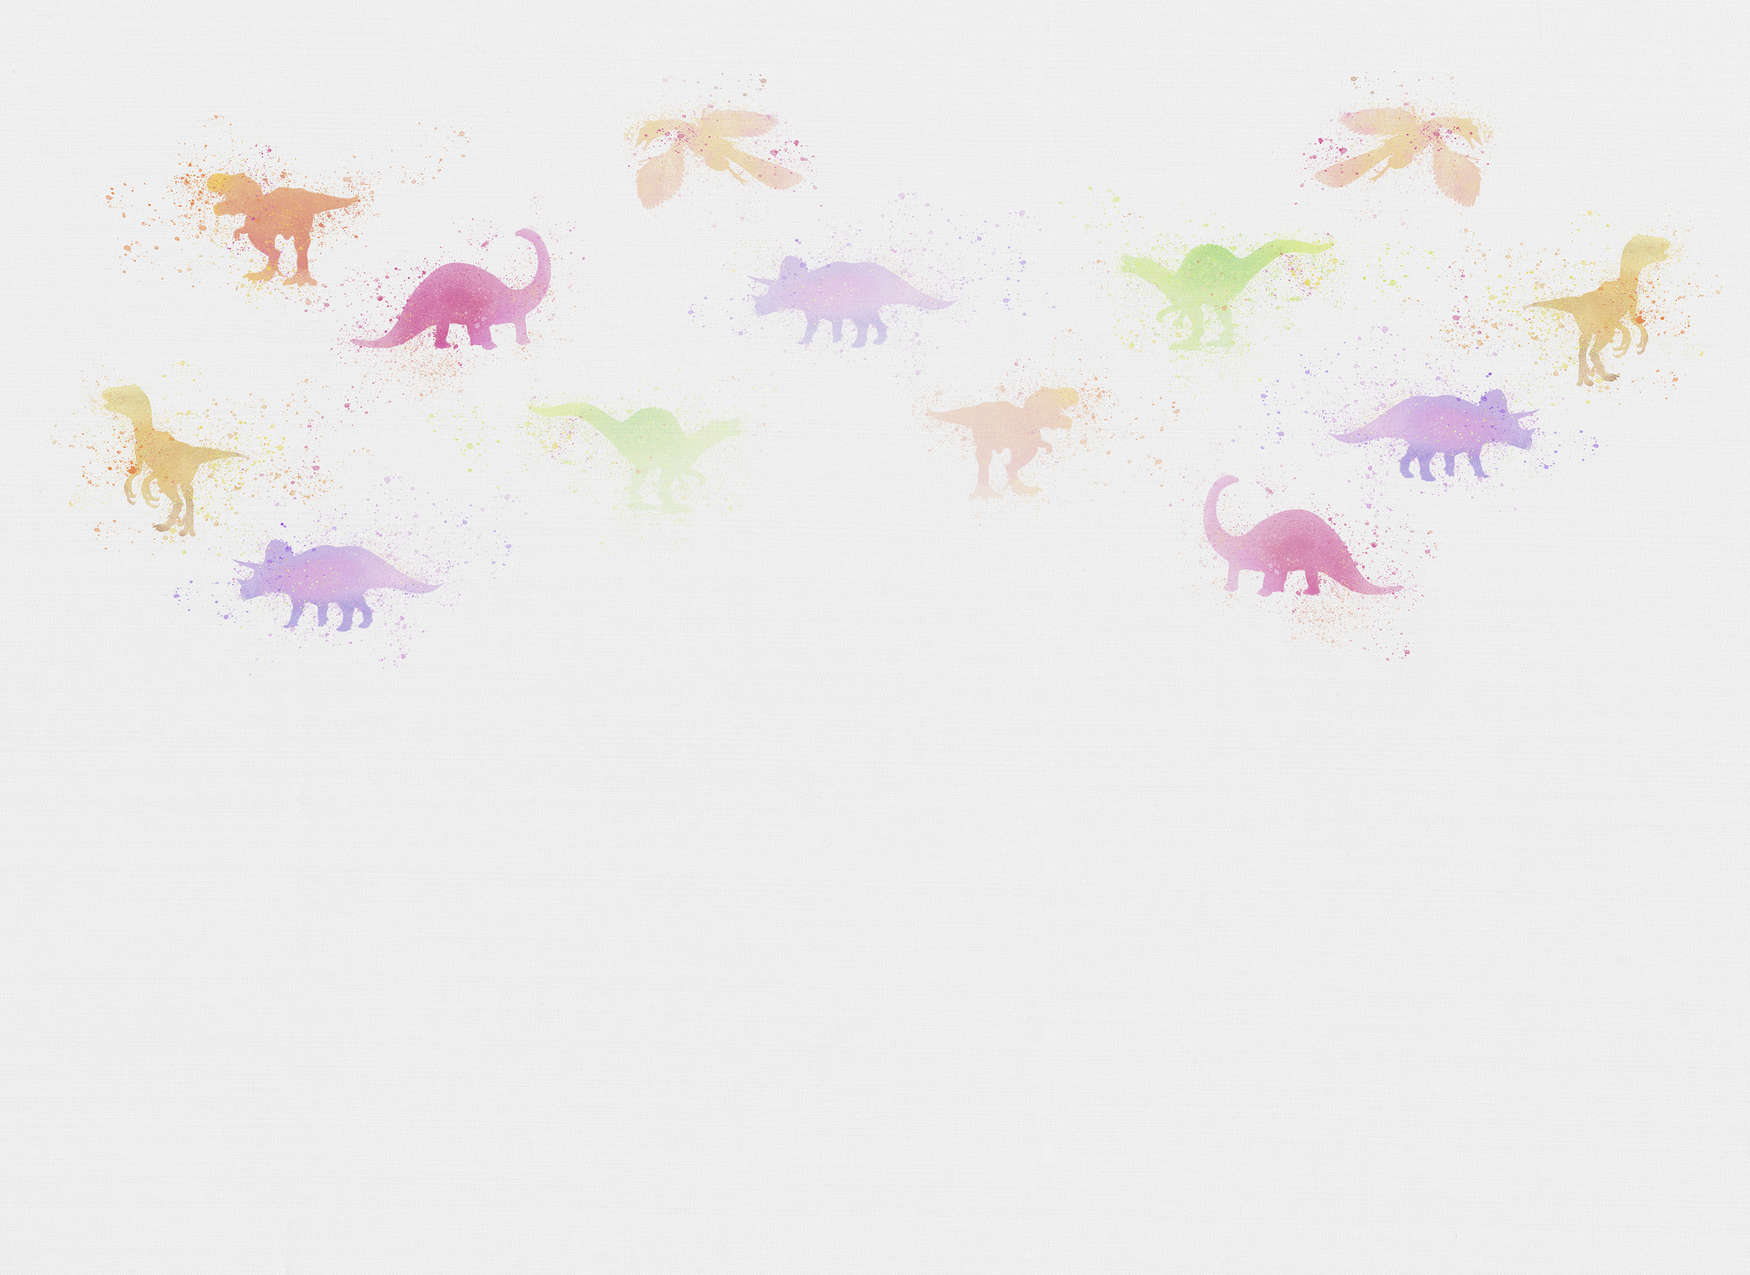             Papier peint chambre d'enfant avec petits dinosaures - multicolore, blanc
        